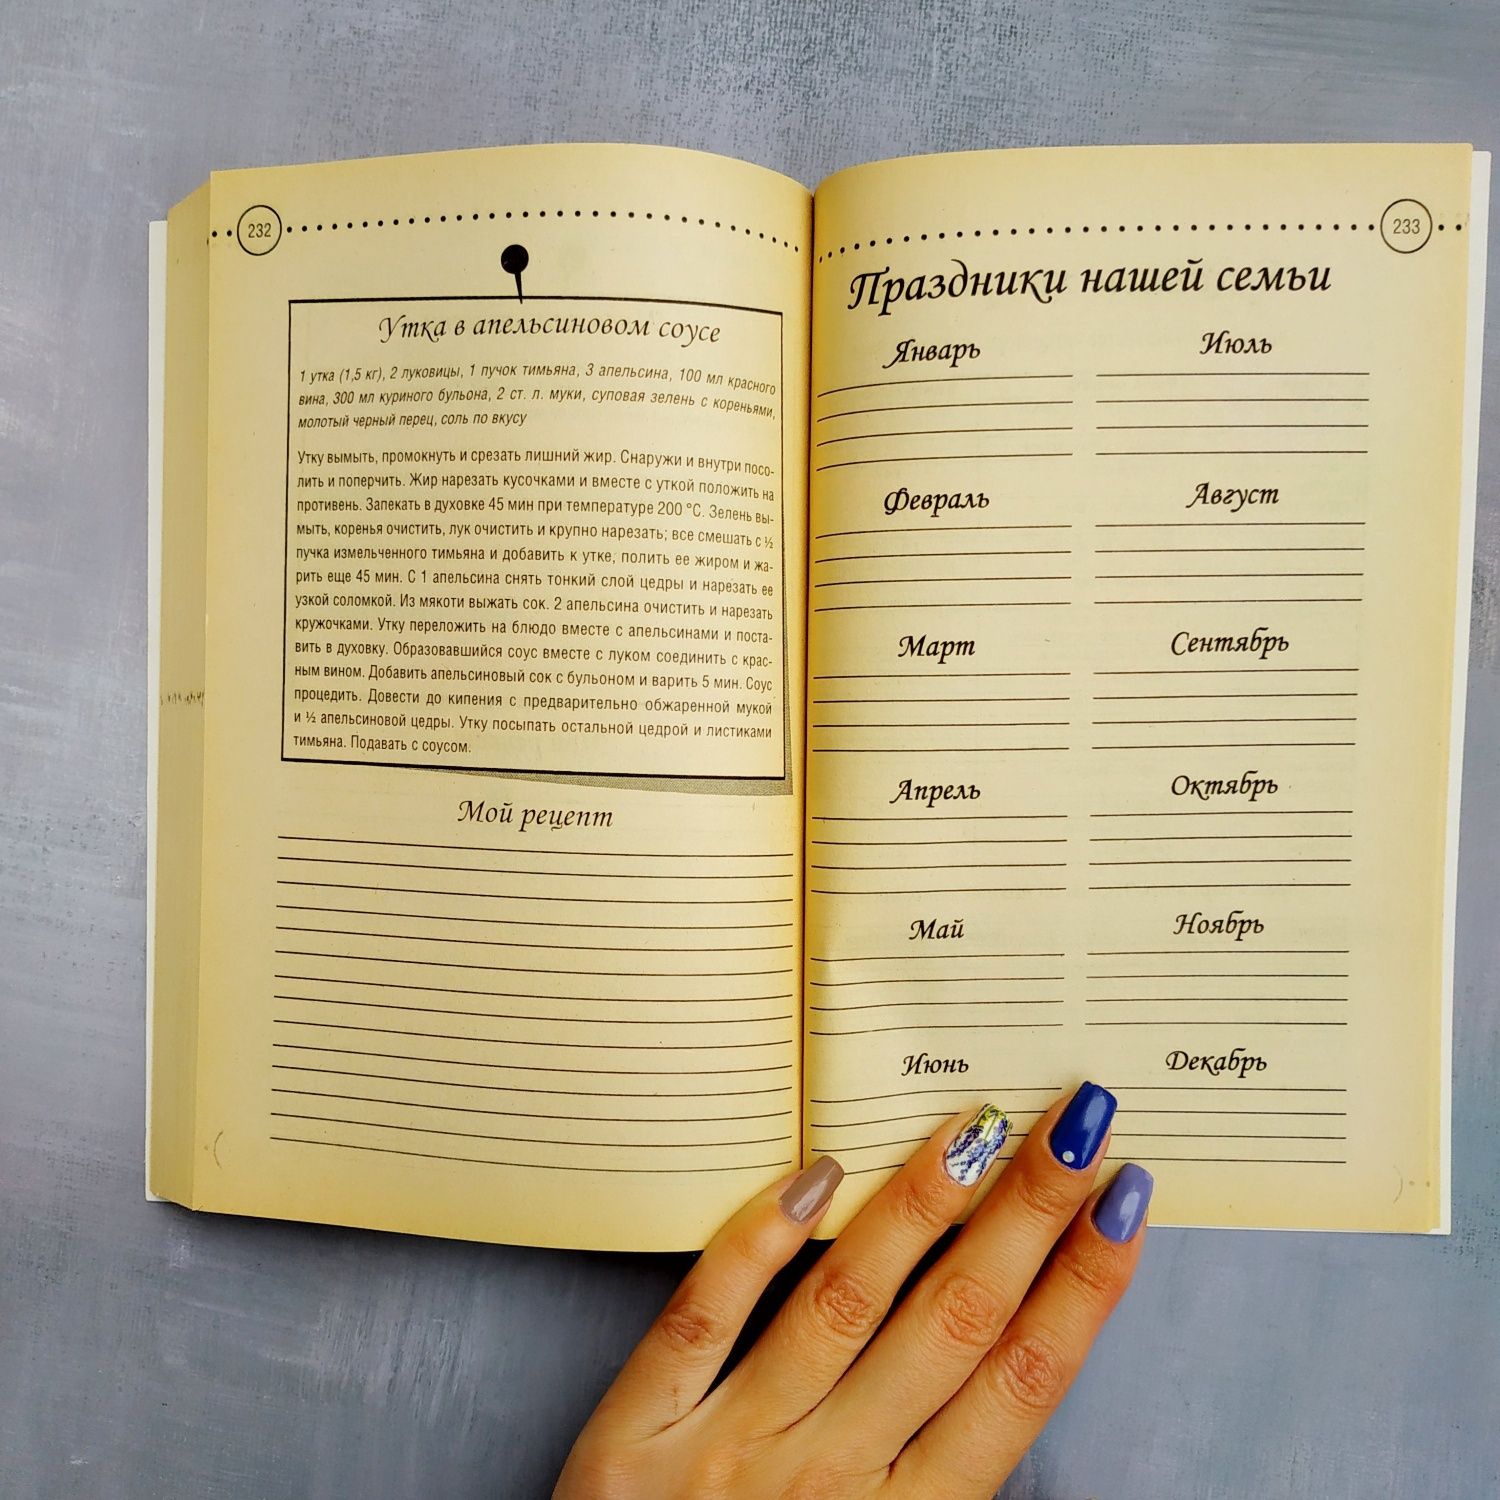 Книга Домашний кухонный календарь

Советы гороскоп рецепты